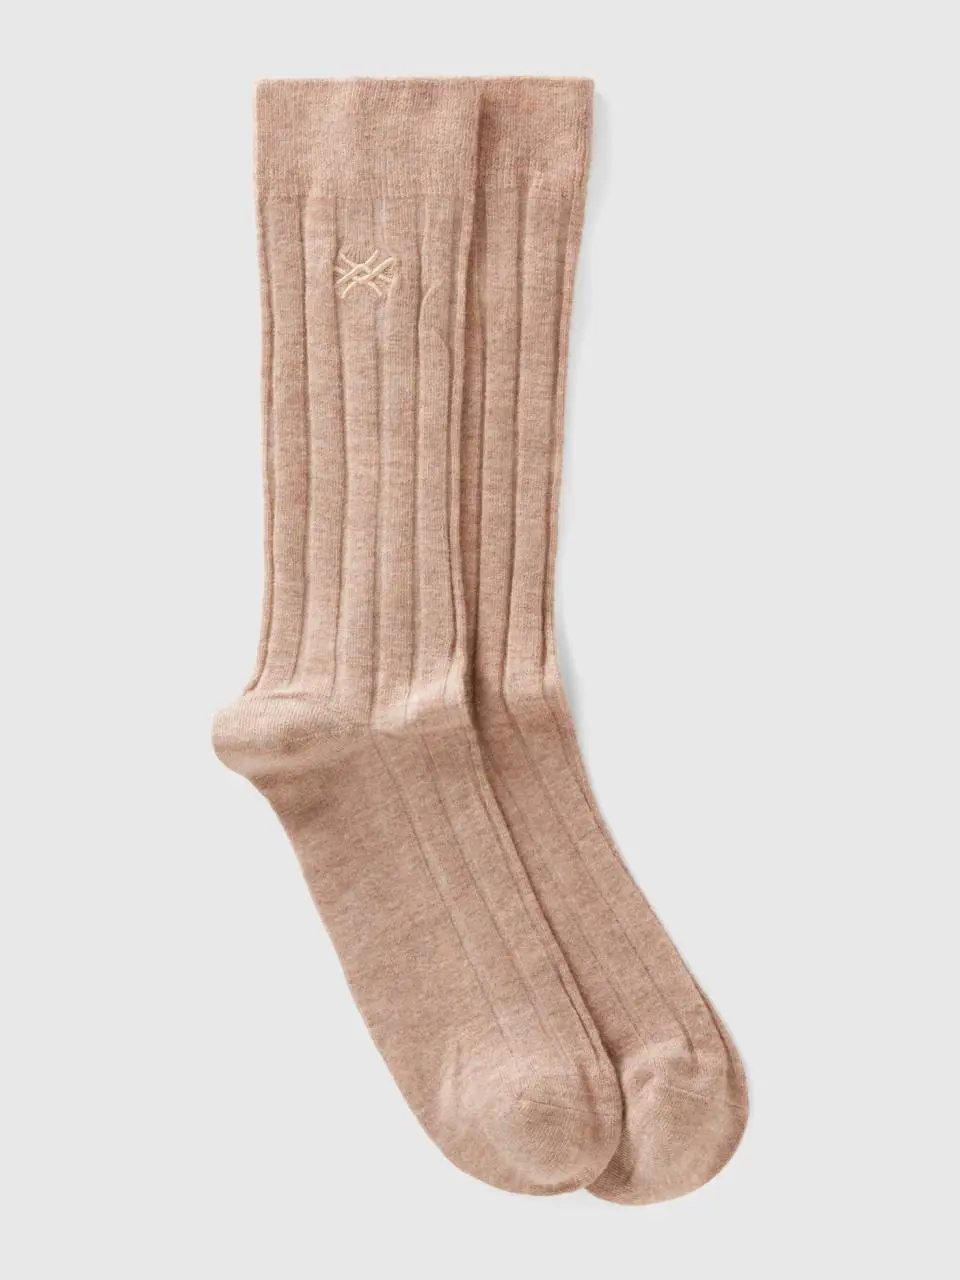 Benetton socks in cashmere blend. 1